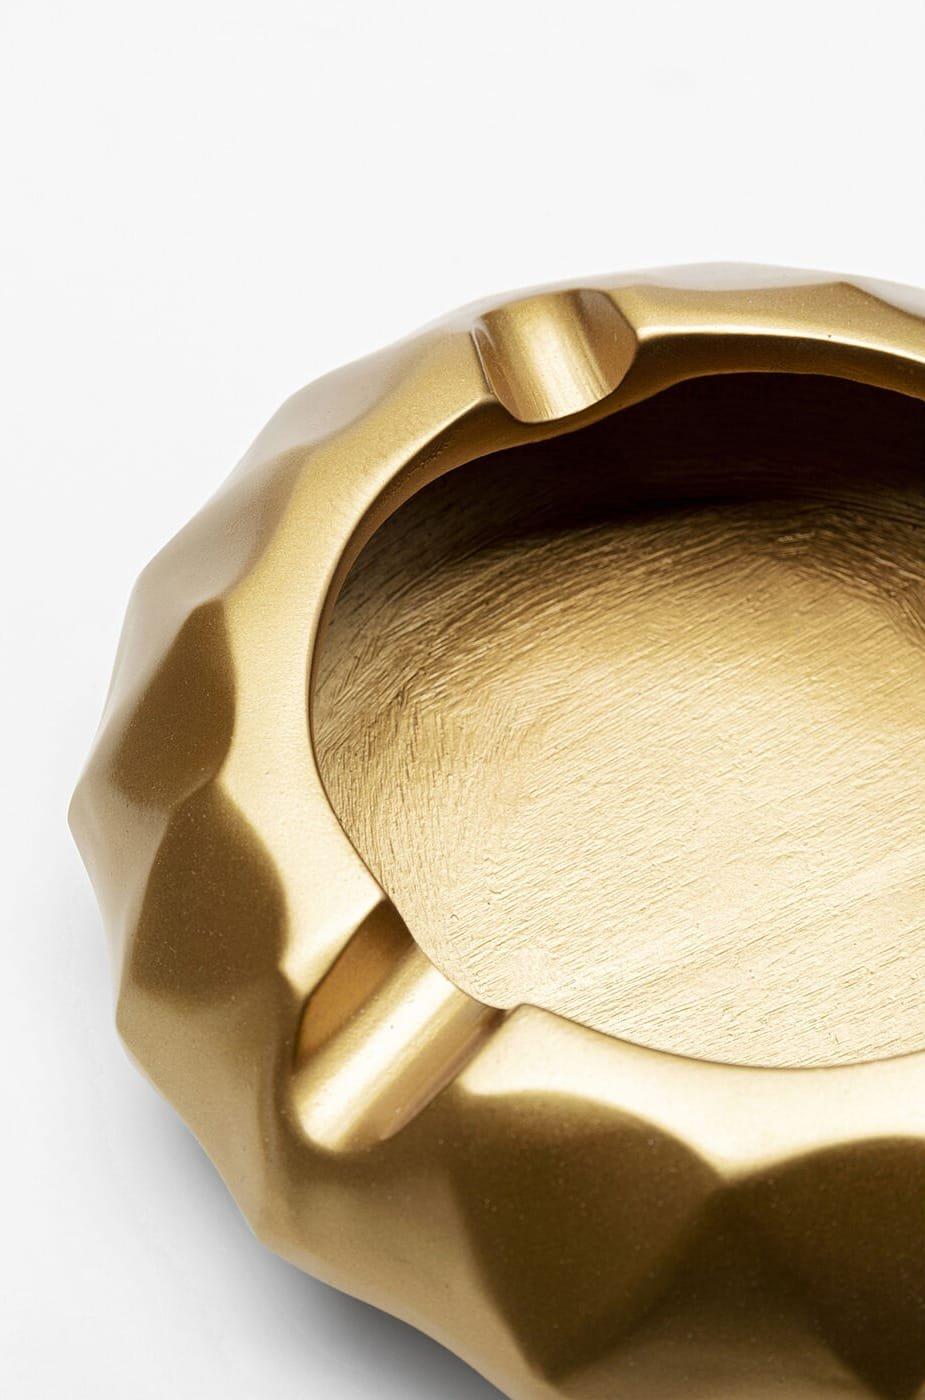 KARE Design Aschenbecher Avantgard gold rund 15  